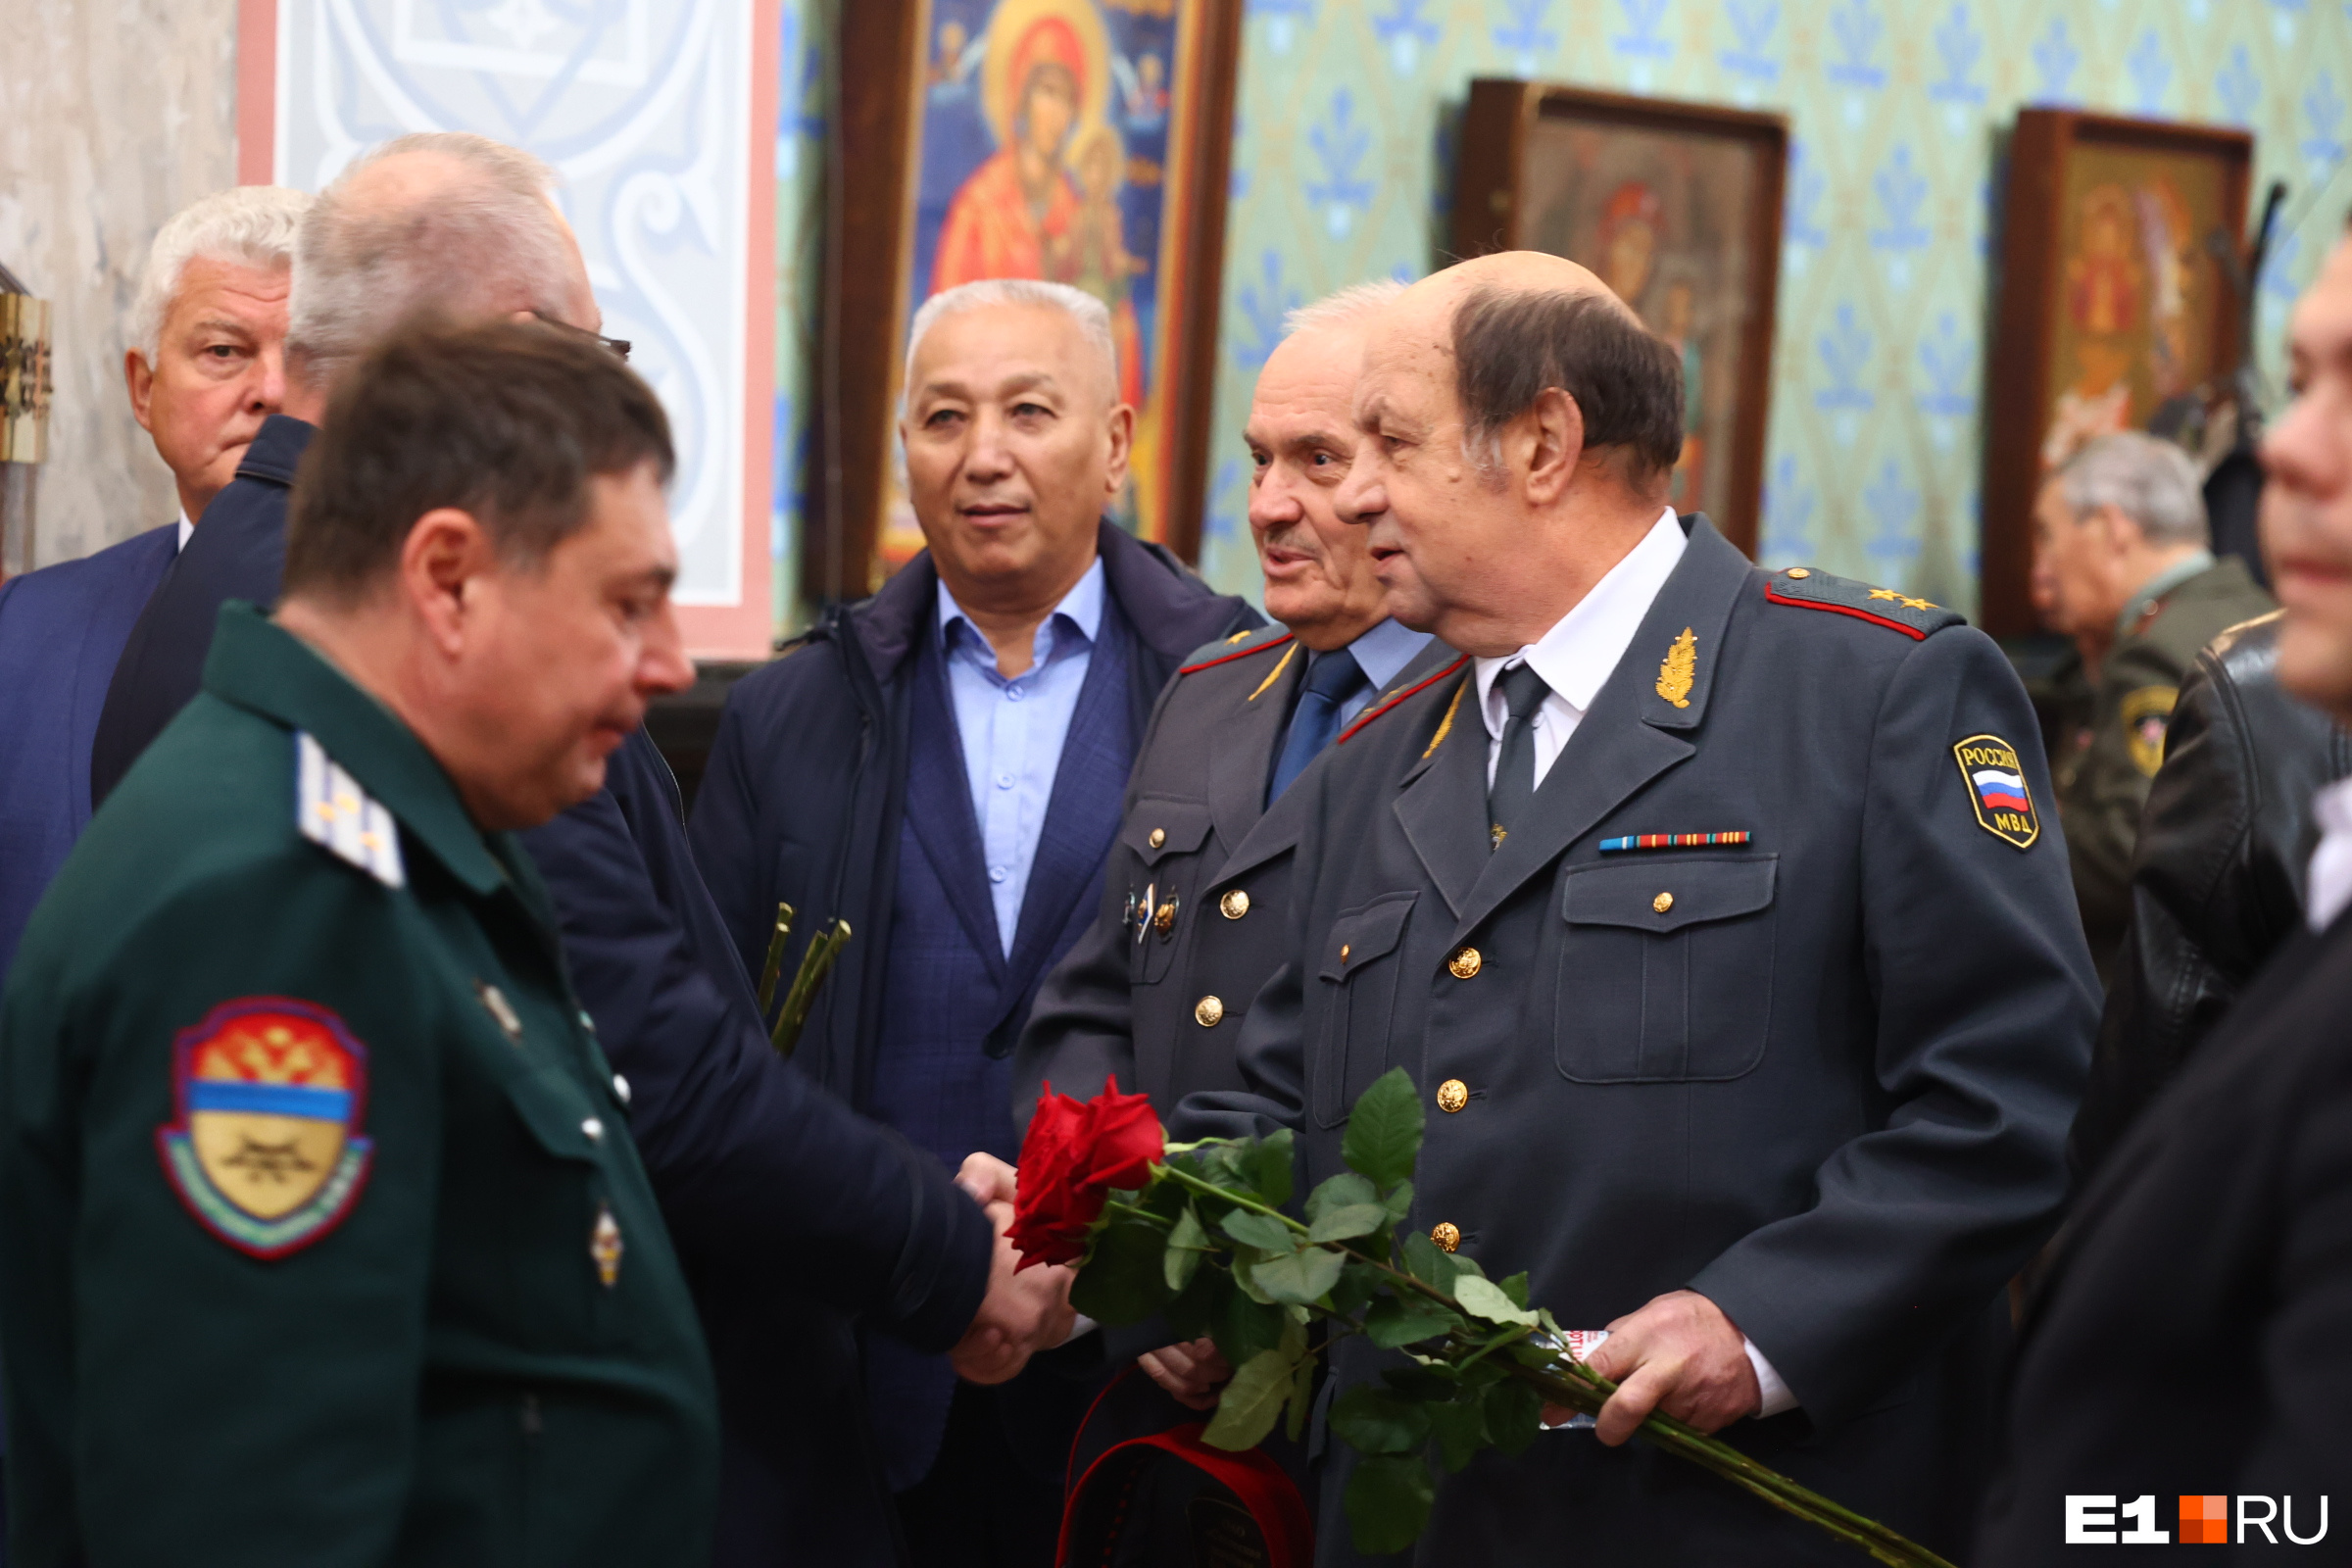 Второй справа — генерал Владимир Филиппов, бывший начальник криминальной милиции 